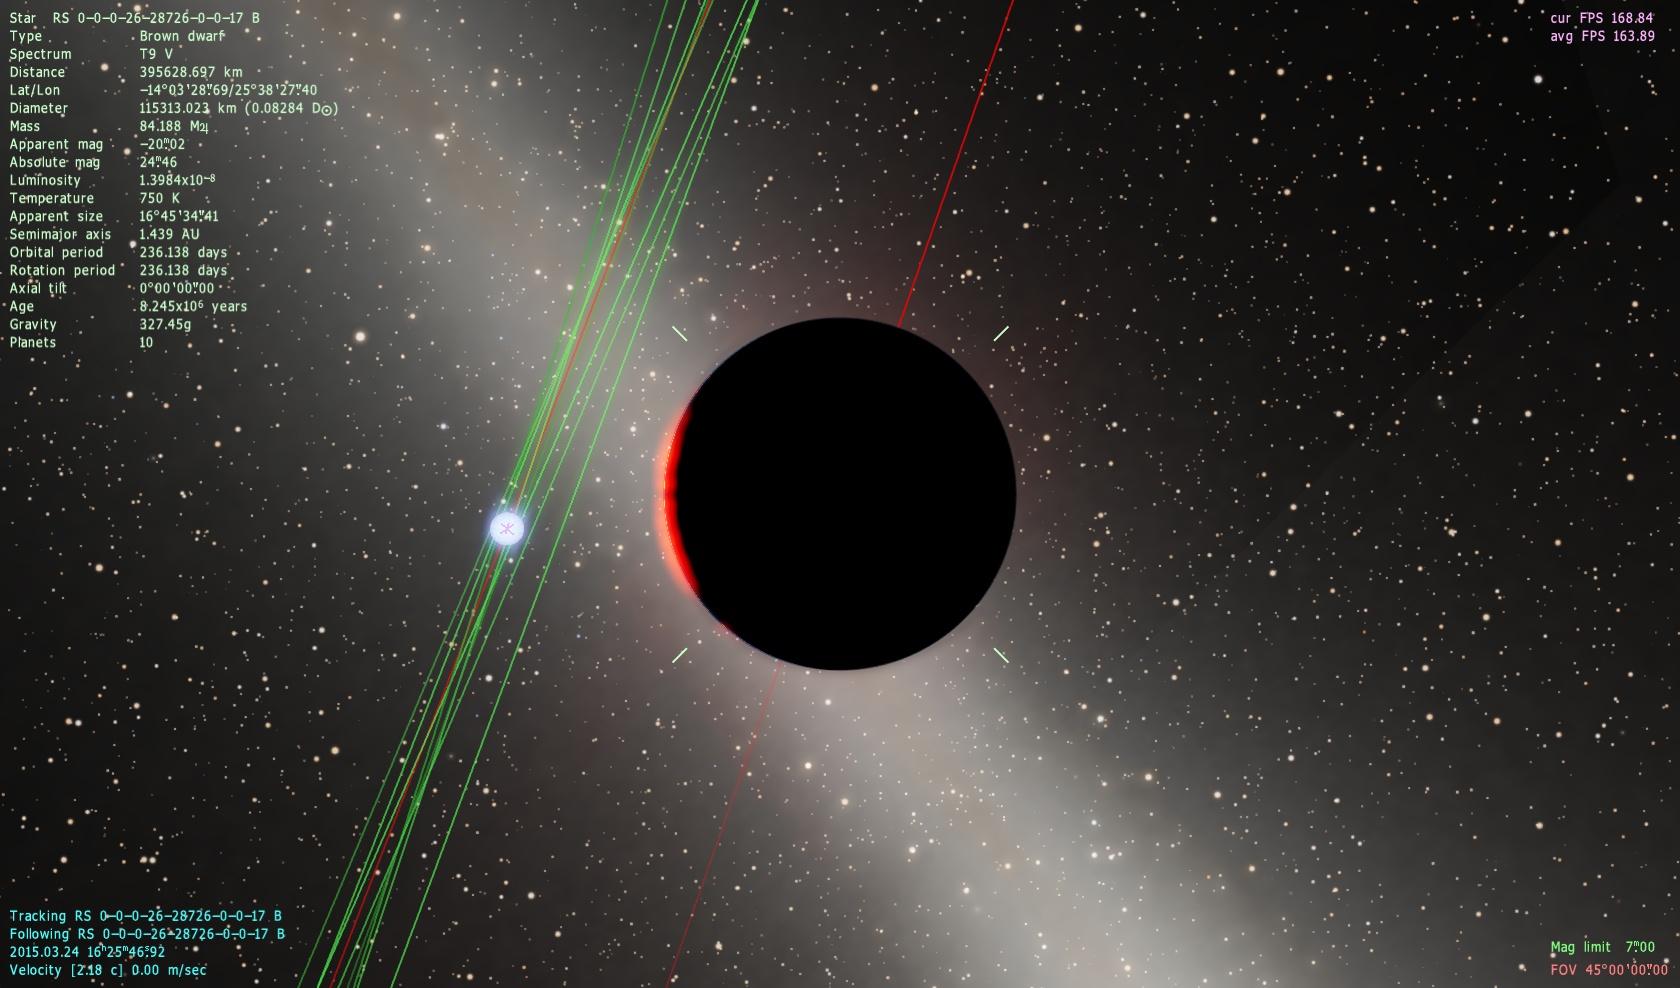 图中蓝色恒星旁边的黑色行星是什么类型的天体?